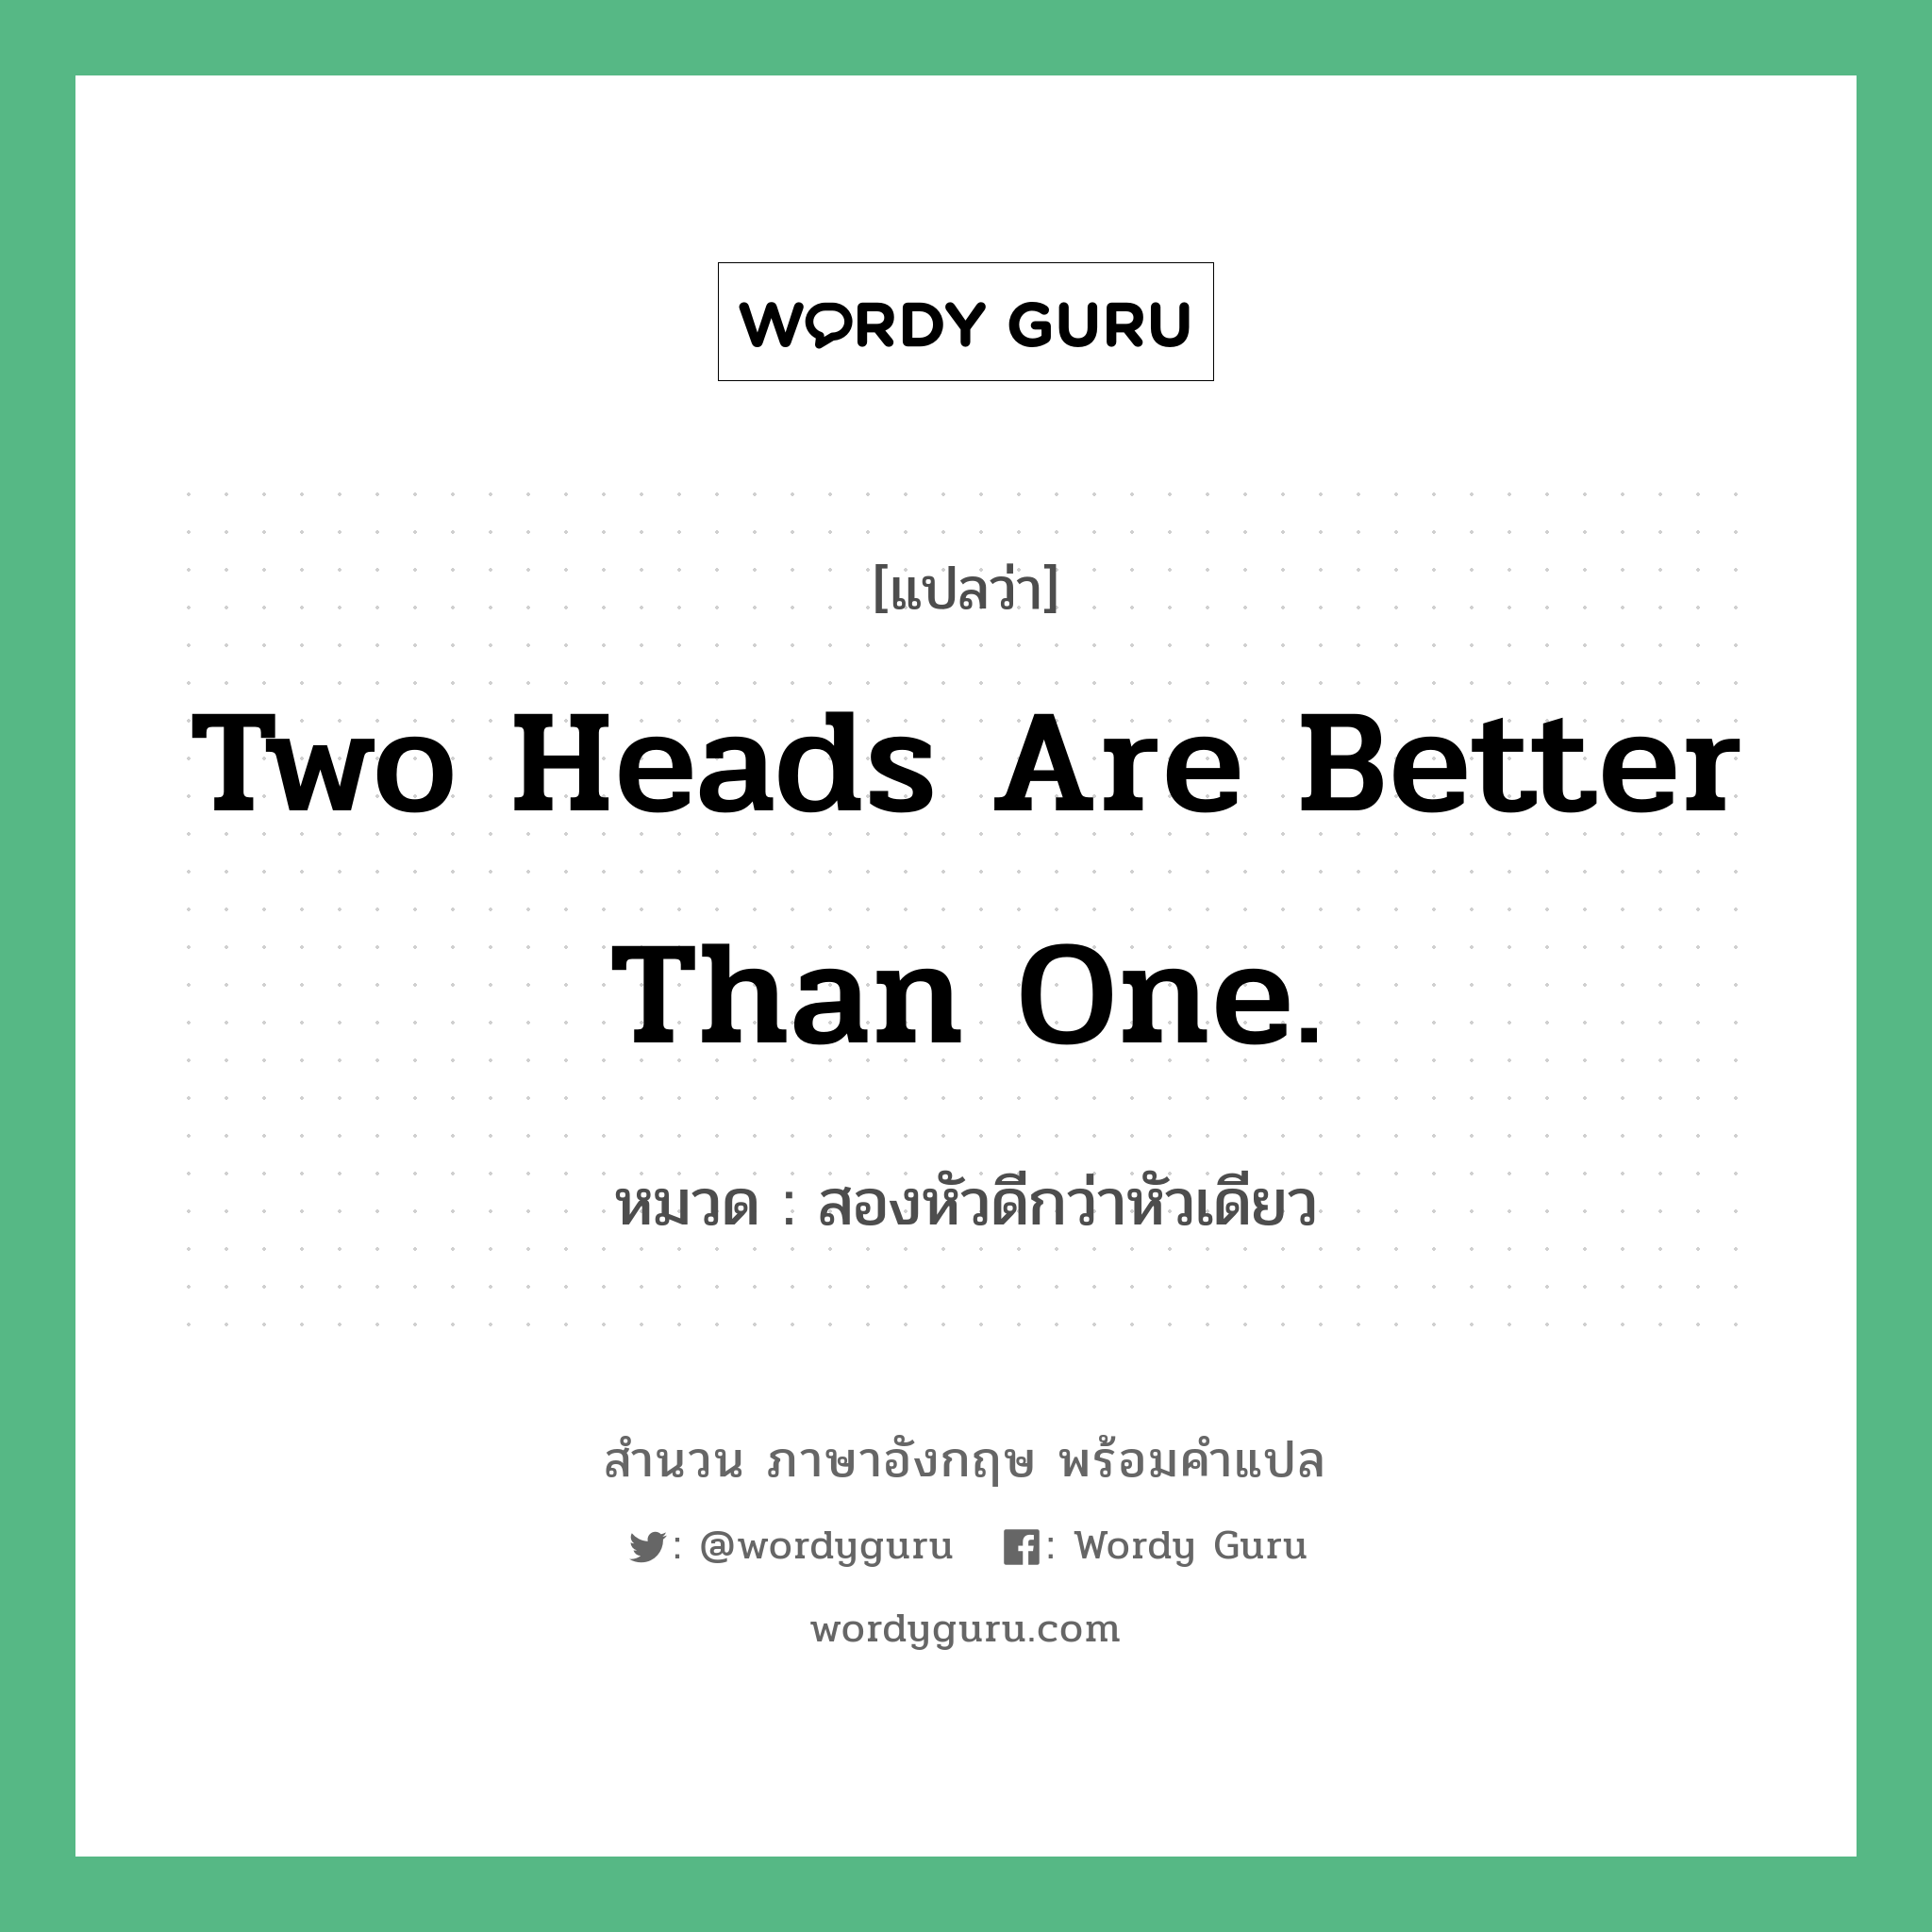 สองหัวดีกว่าหัวเดียว ภาษาอังกฤษ?, สำนวนภาษาอังกฤษ สองหัวดีกว่าหัวเดียว แปลว่า สองหัวดีกว่าหัวเดียว หมวด Two heads are better than one. คำสุภาษิต ภาษาอังกฤษ หมวด คำสุภาษิต ภาษาอังกฤษ